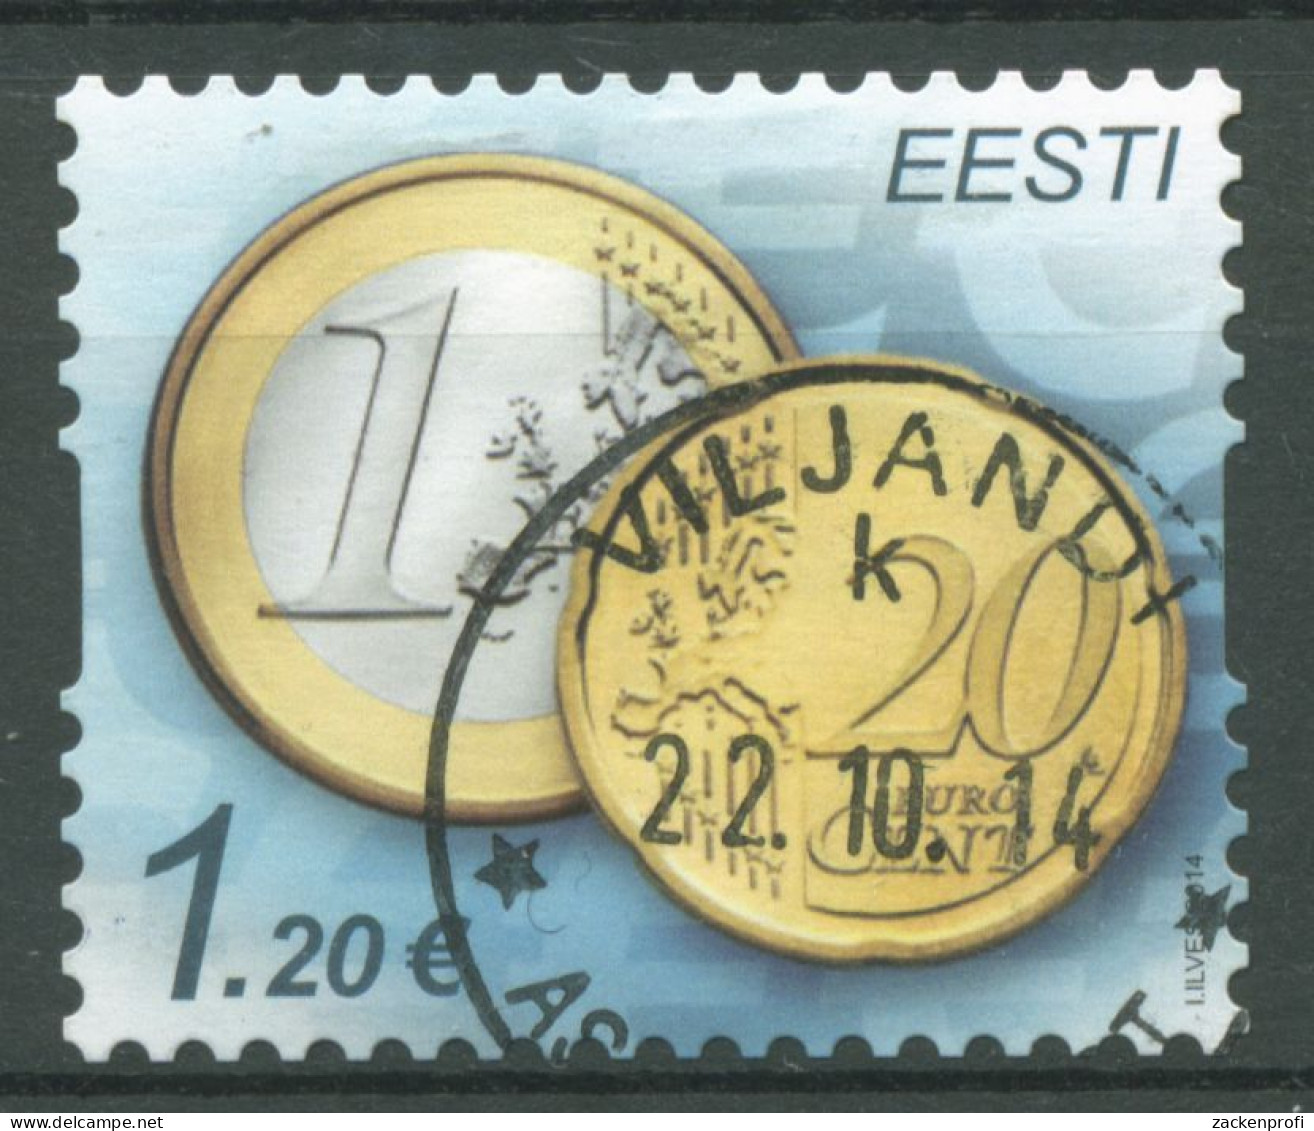 Estland 2014 Euromünzen 807 Gestempelt - Estland